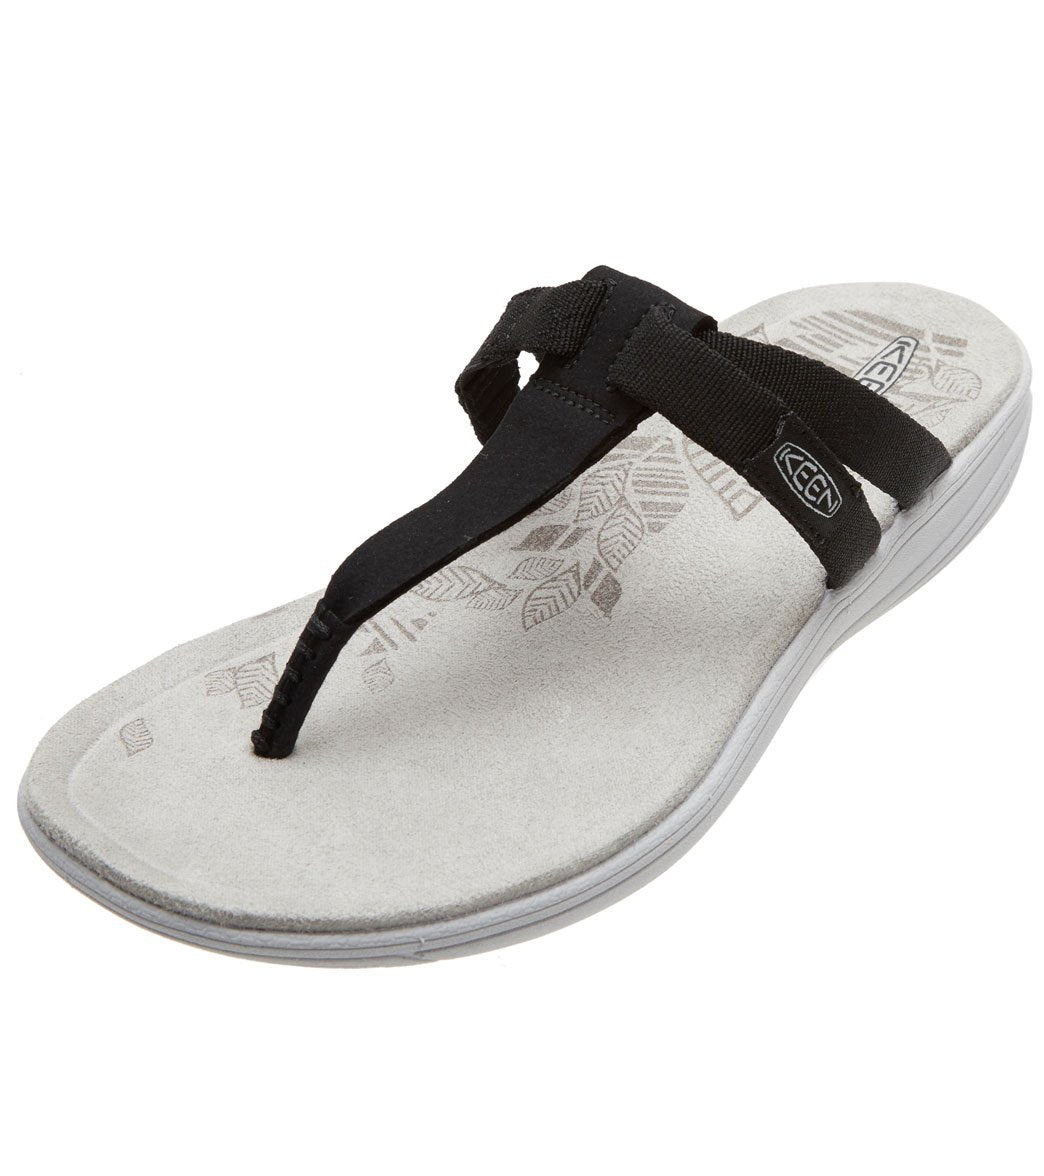 Keen Women's Damaya Flip Flop Sandals - Black/Vapor Blue 5.5 - Swimoutlet.com